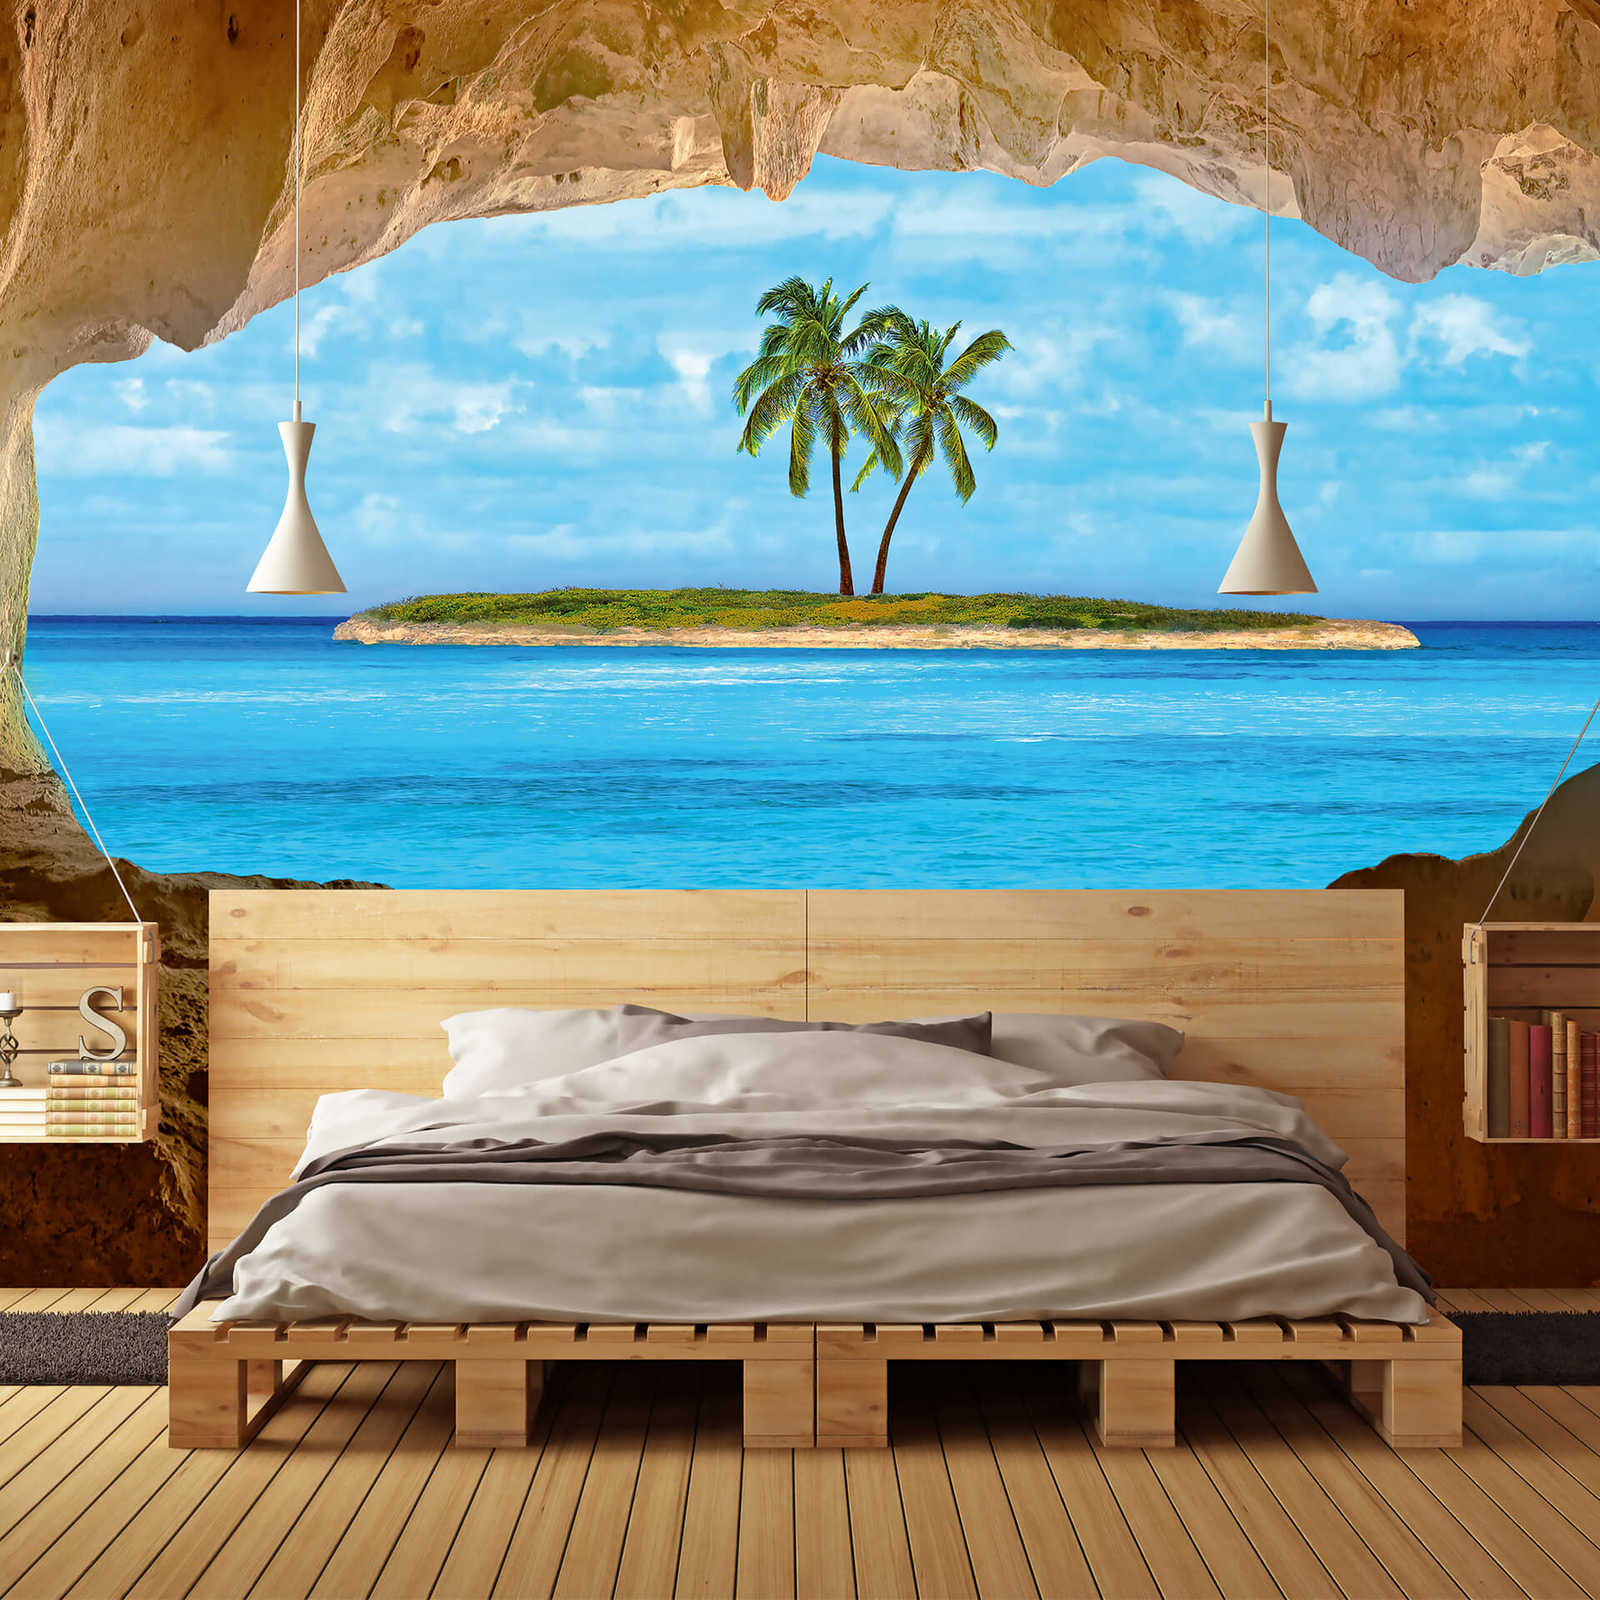             Papel pintado tropical con vistas a la isla de las palmeras y a los mares del sur
        